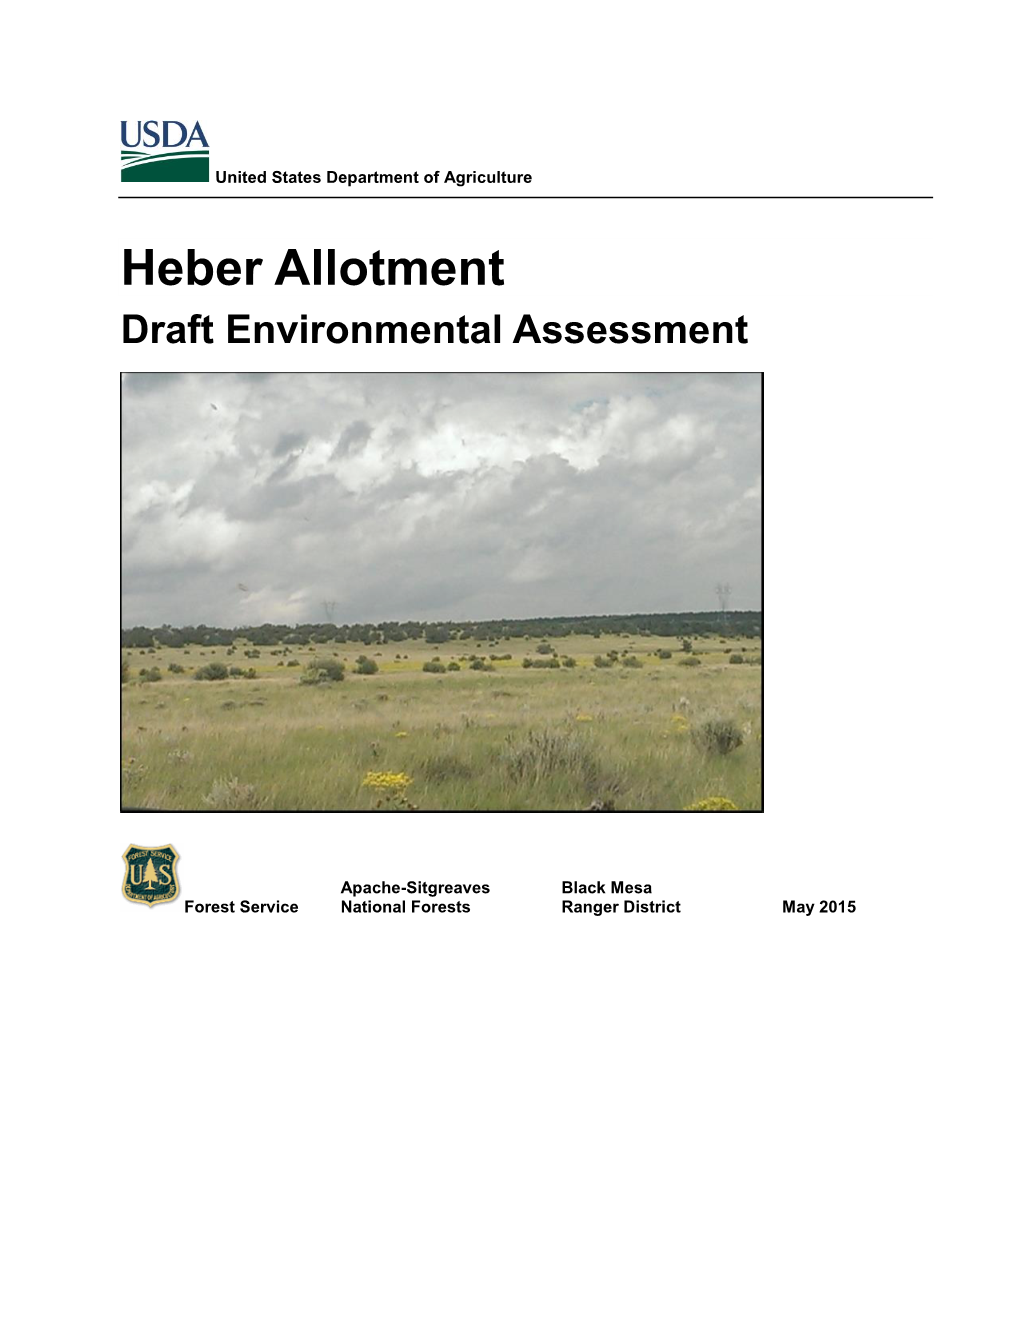 Heber Allotment Environmental Assessment